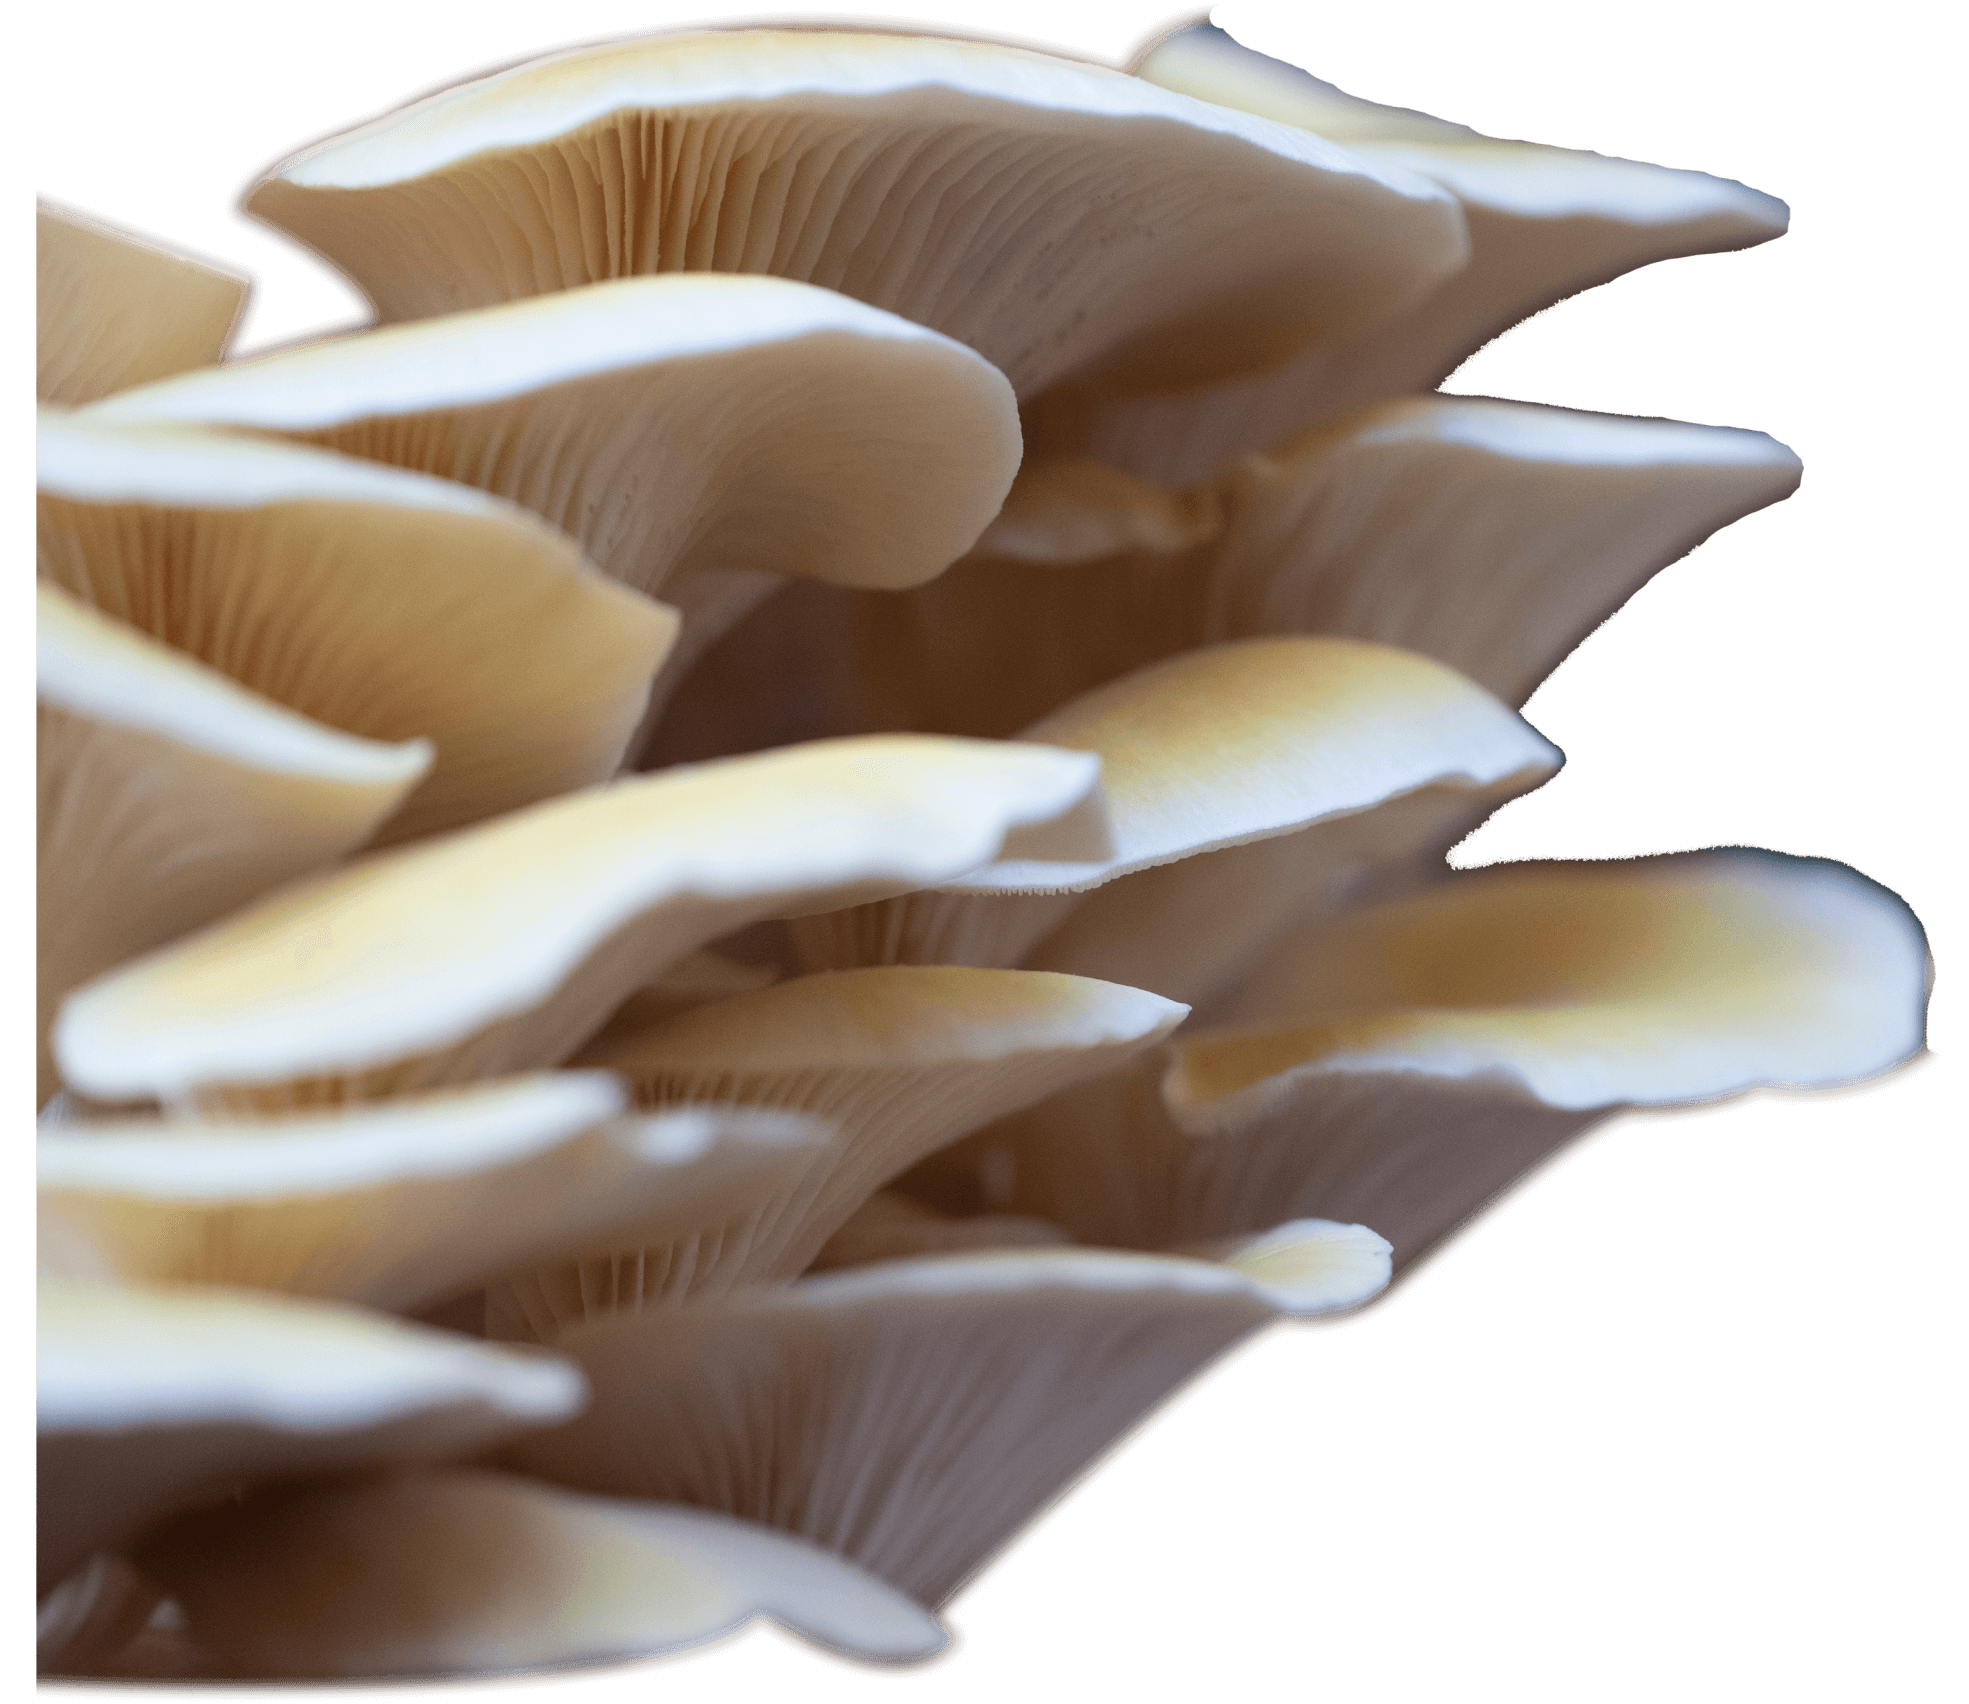 mushrooms - tealeaves loose leaf botanical powder tea